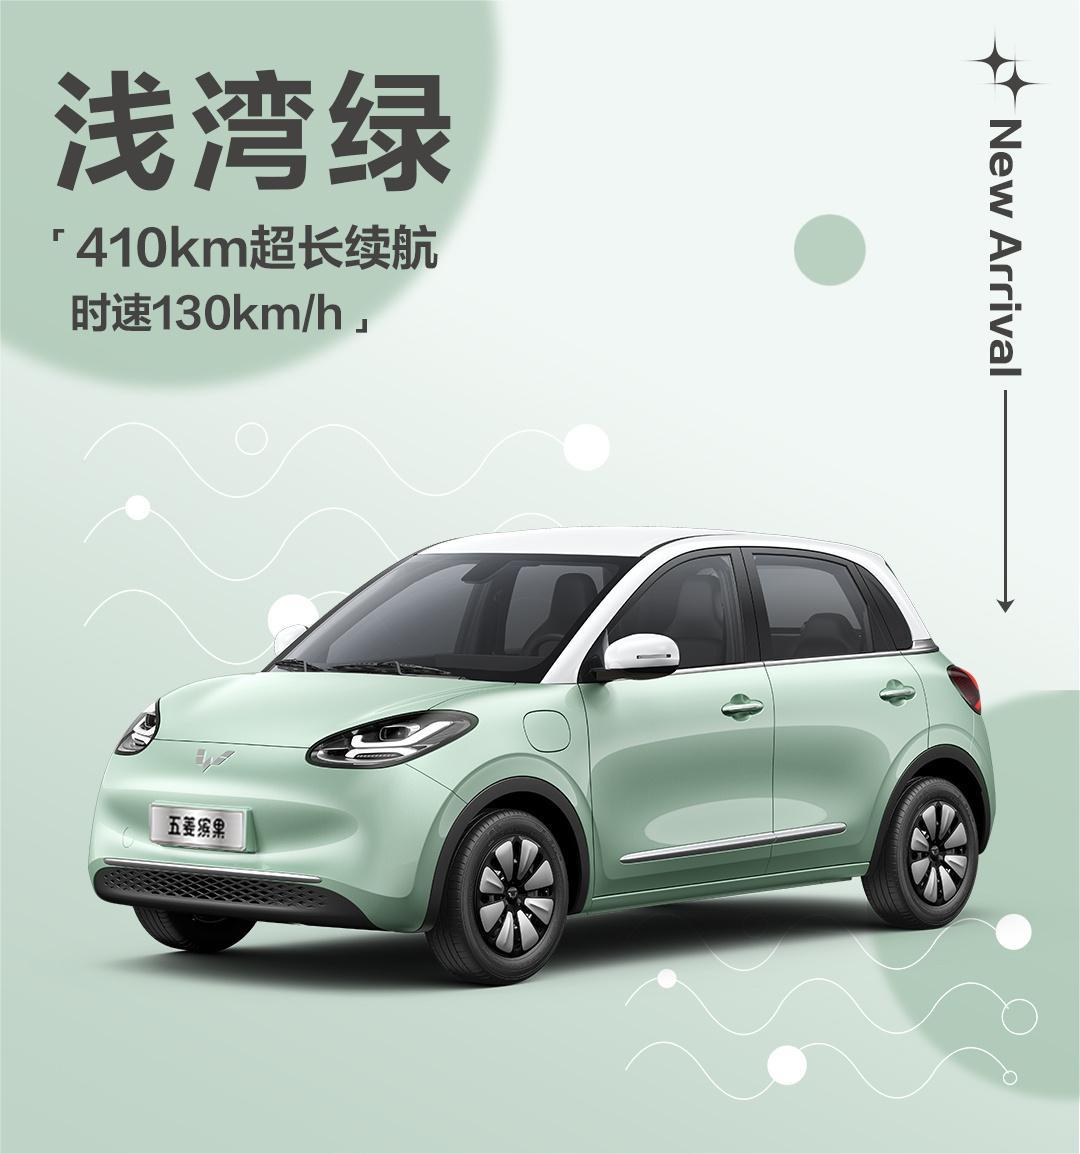 增3款全新车色 五菱缤果410km版将于9月25日上市